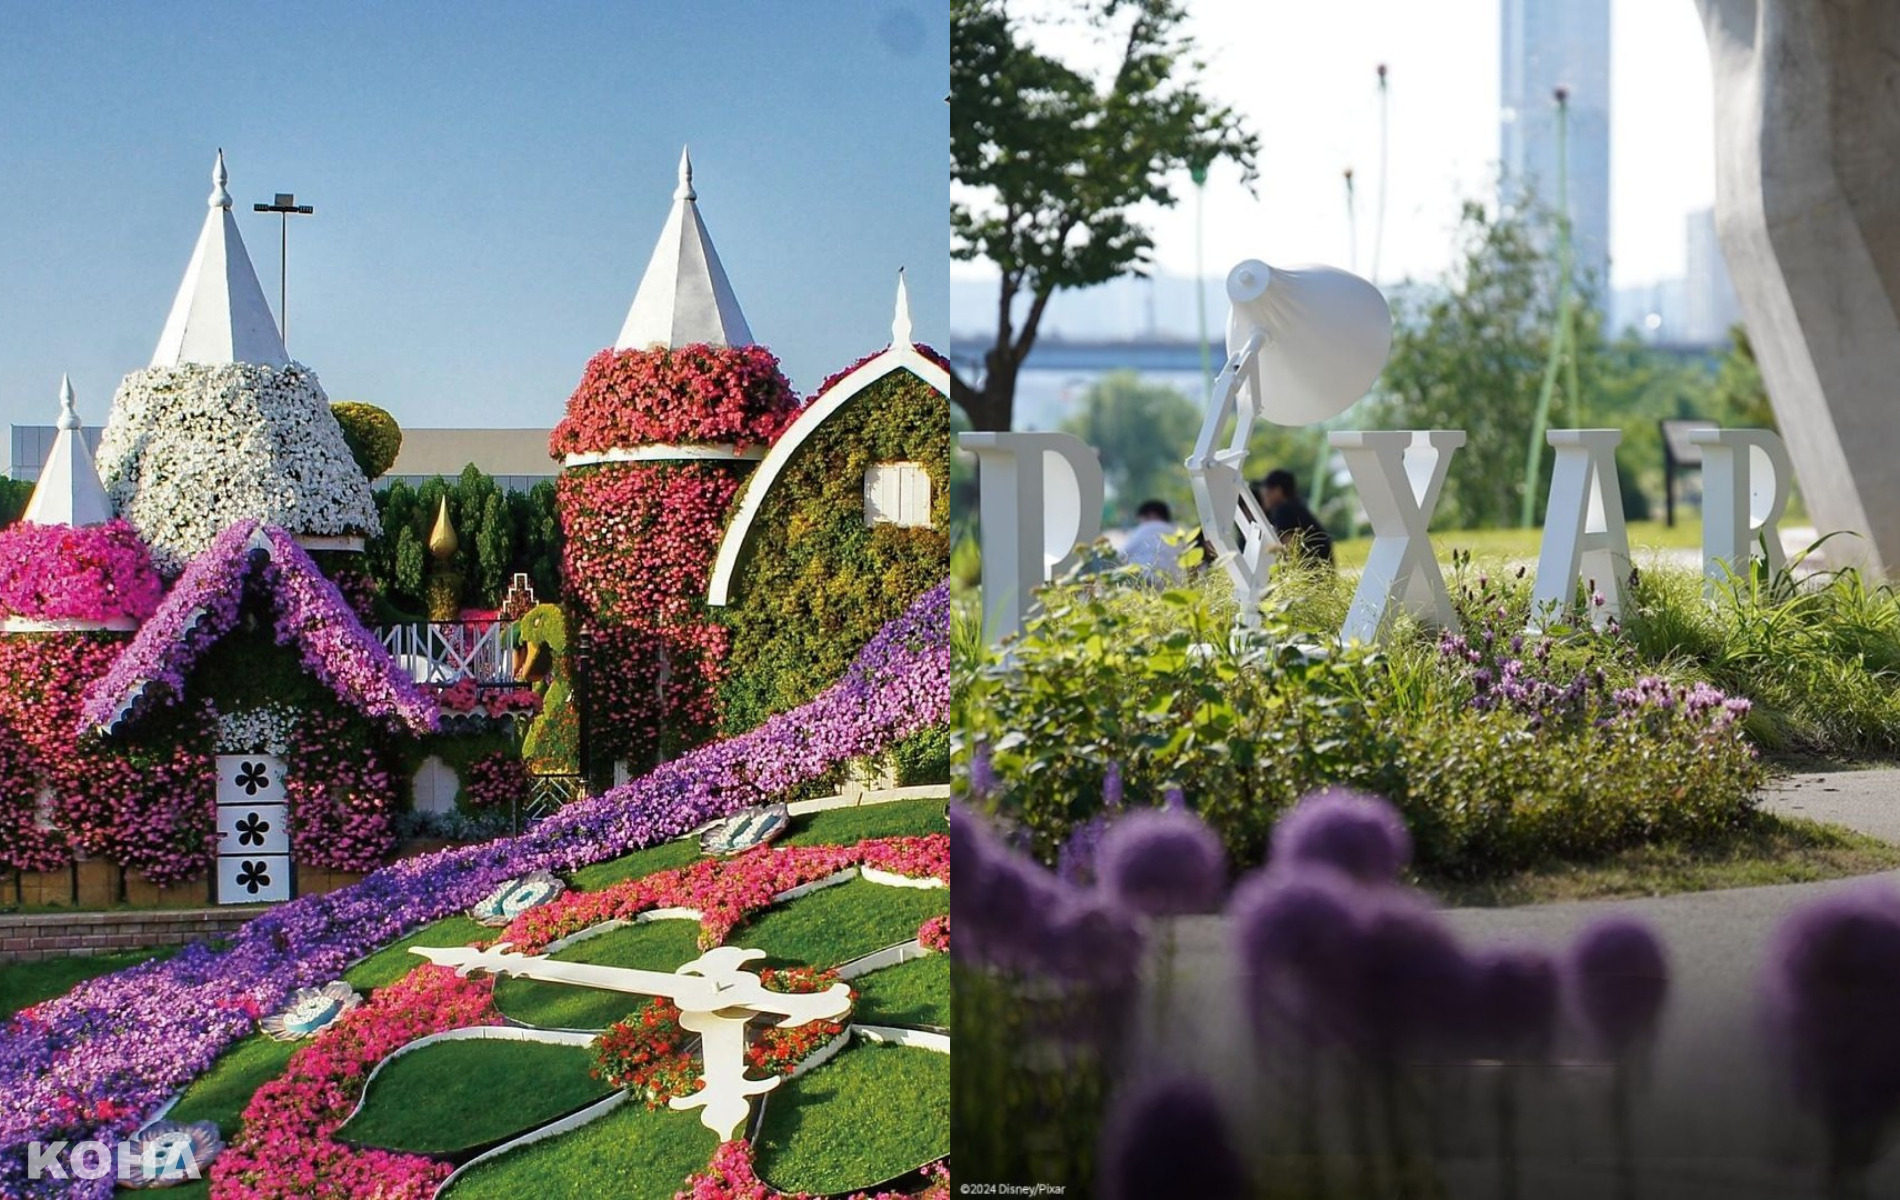 首爾纛島漢江公園變花園版迪士尼樂園！花園博覽會與米奇與皮克斯明星漫步漢江河畔